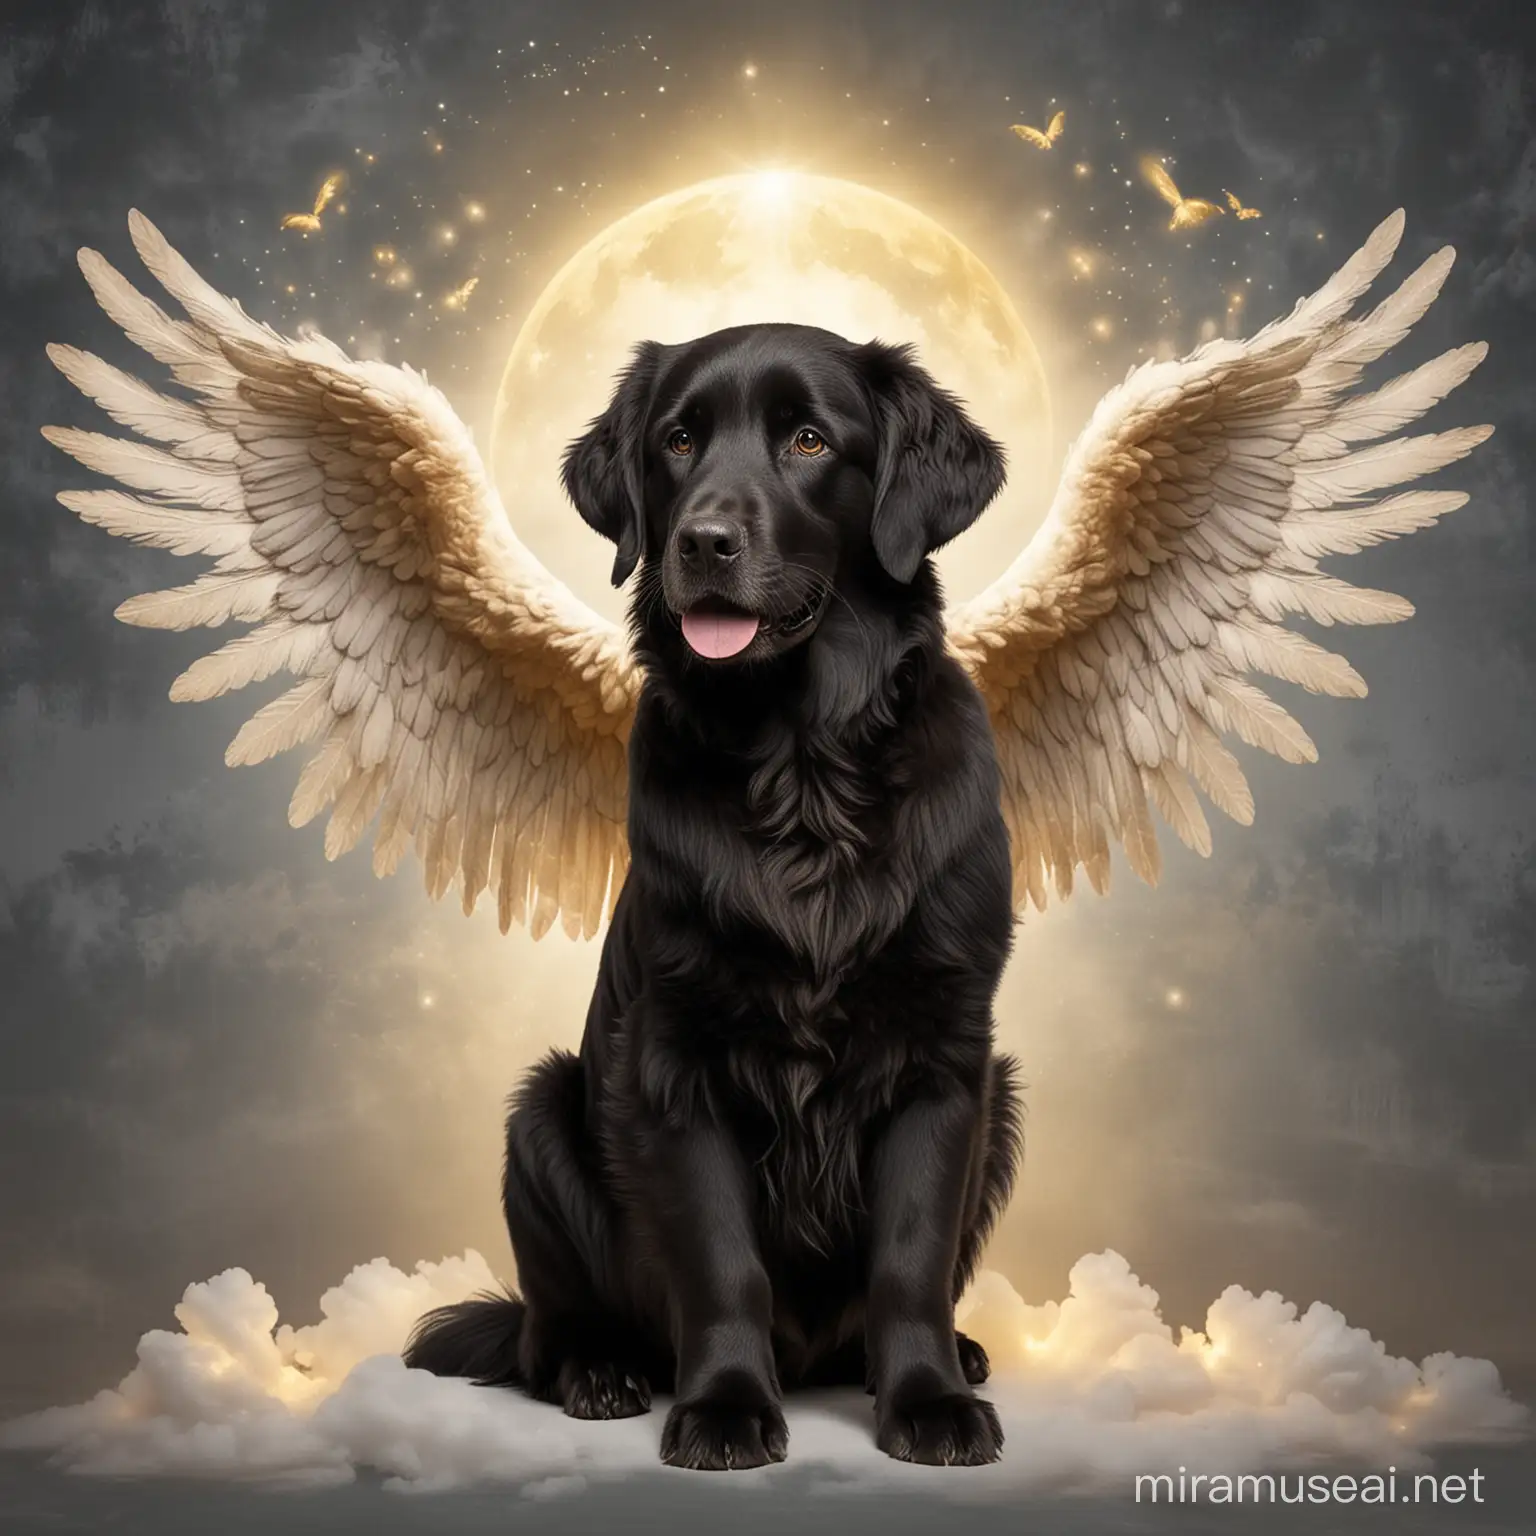 Crear una imagen de un perro Golden negro con alas de ángel